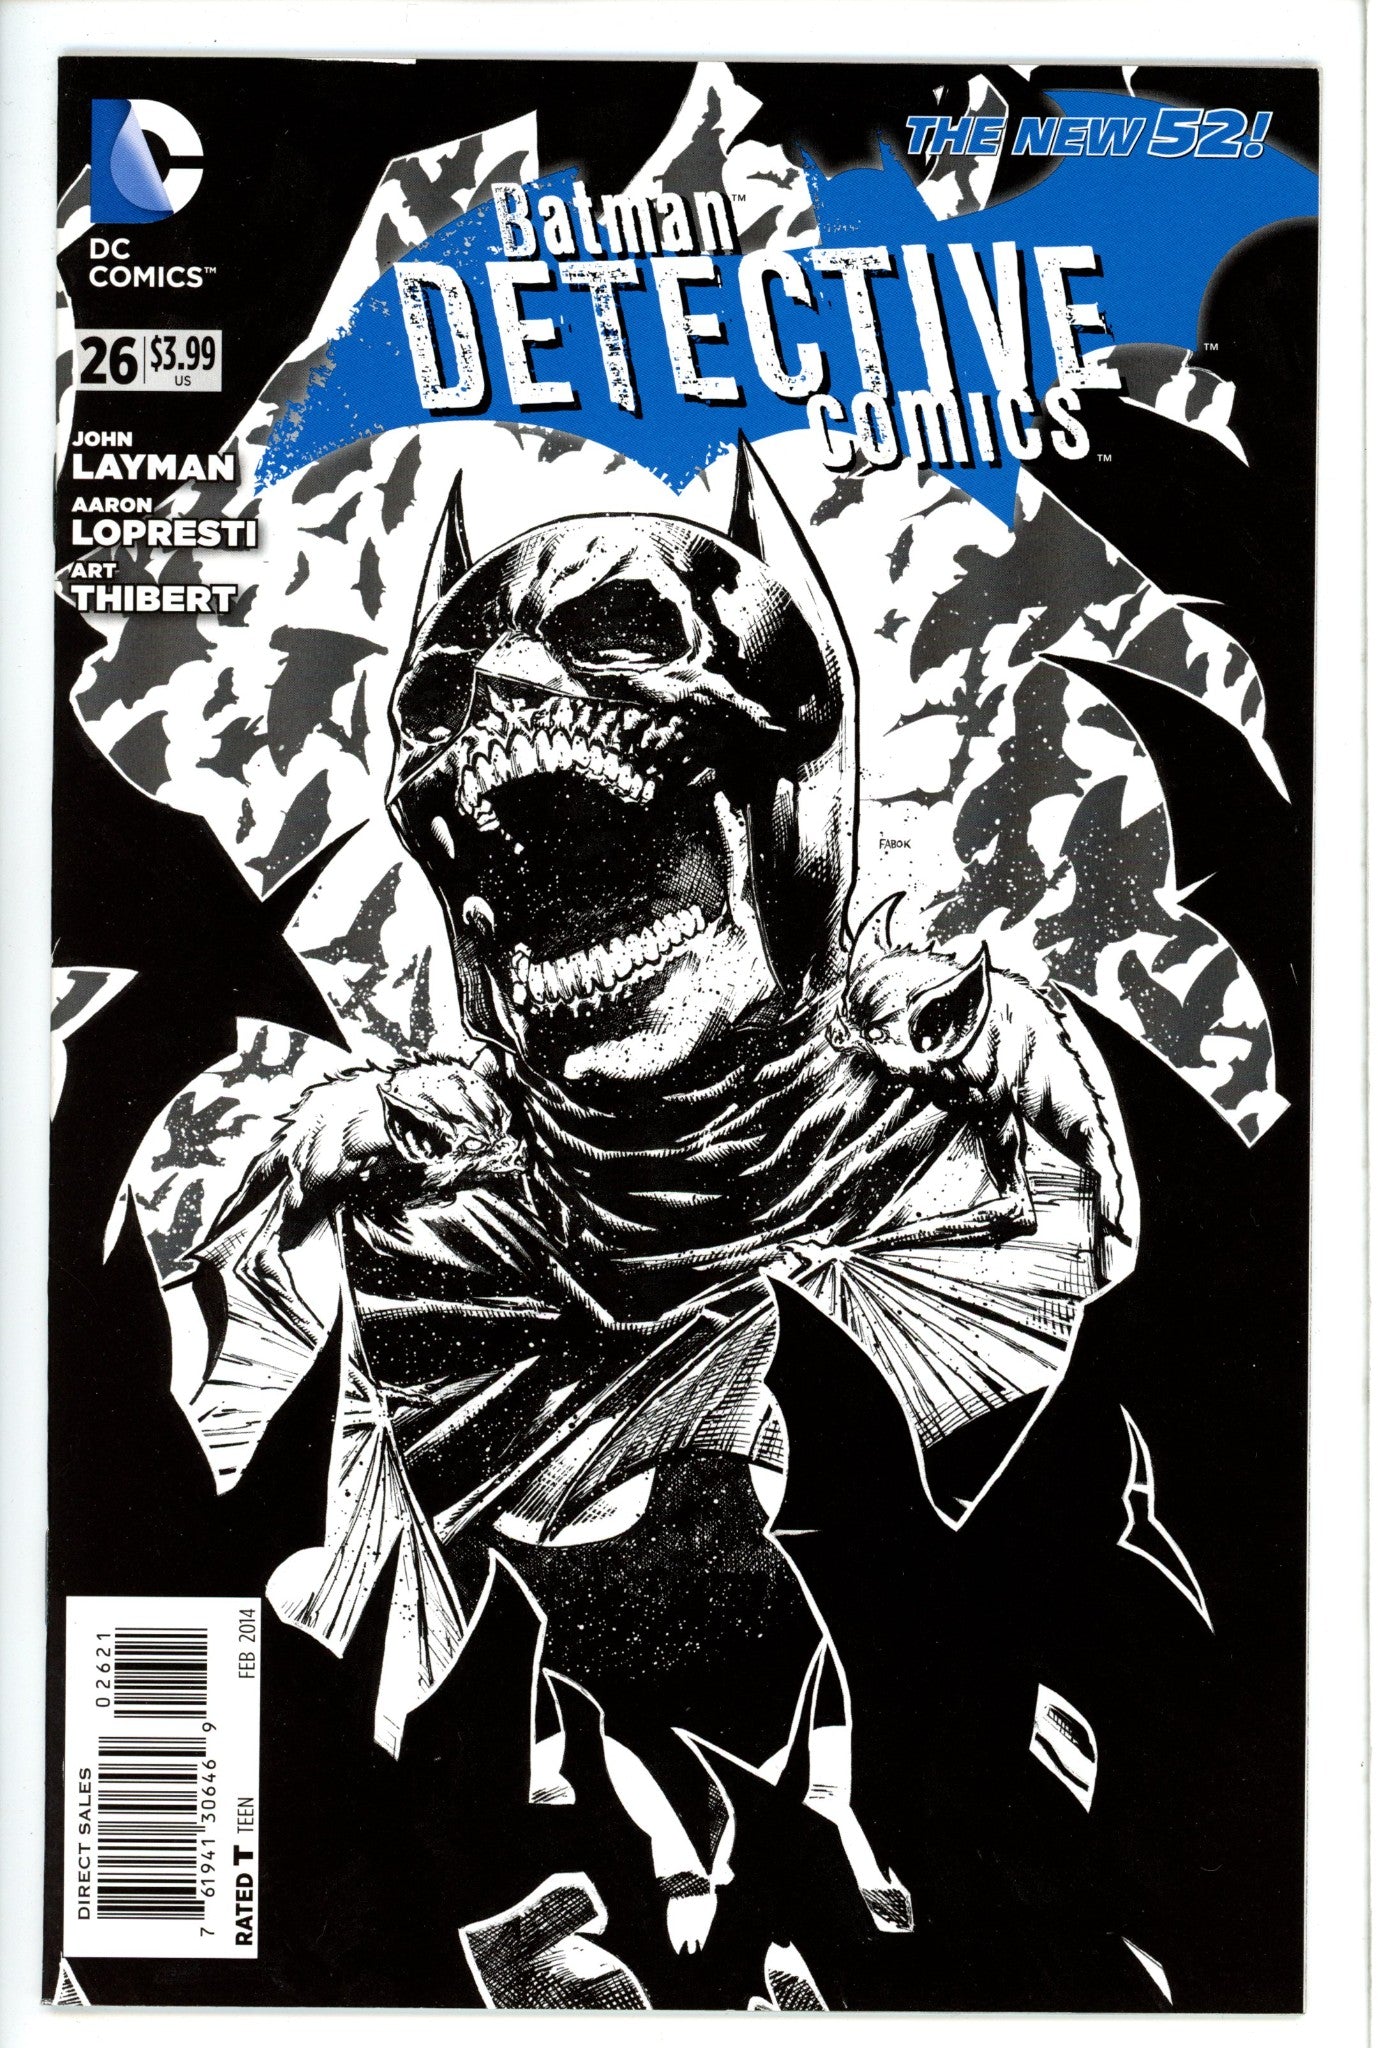 Detective Comics Vol 2 26 Fabok Variant-DC-CaptCan Comics Inc